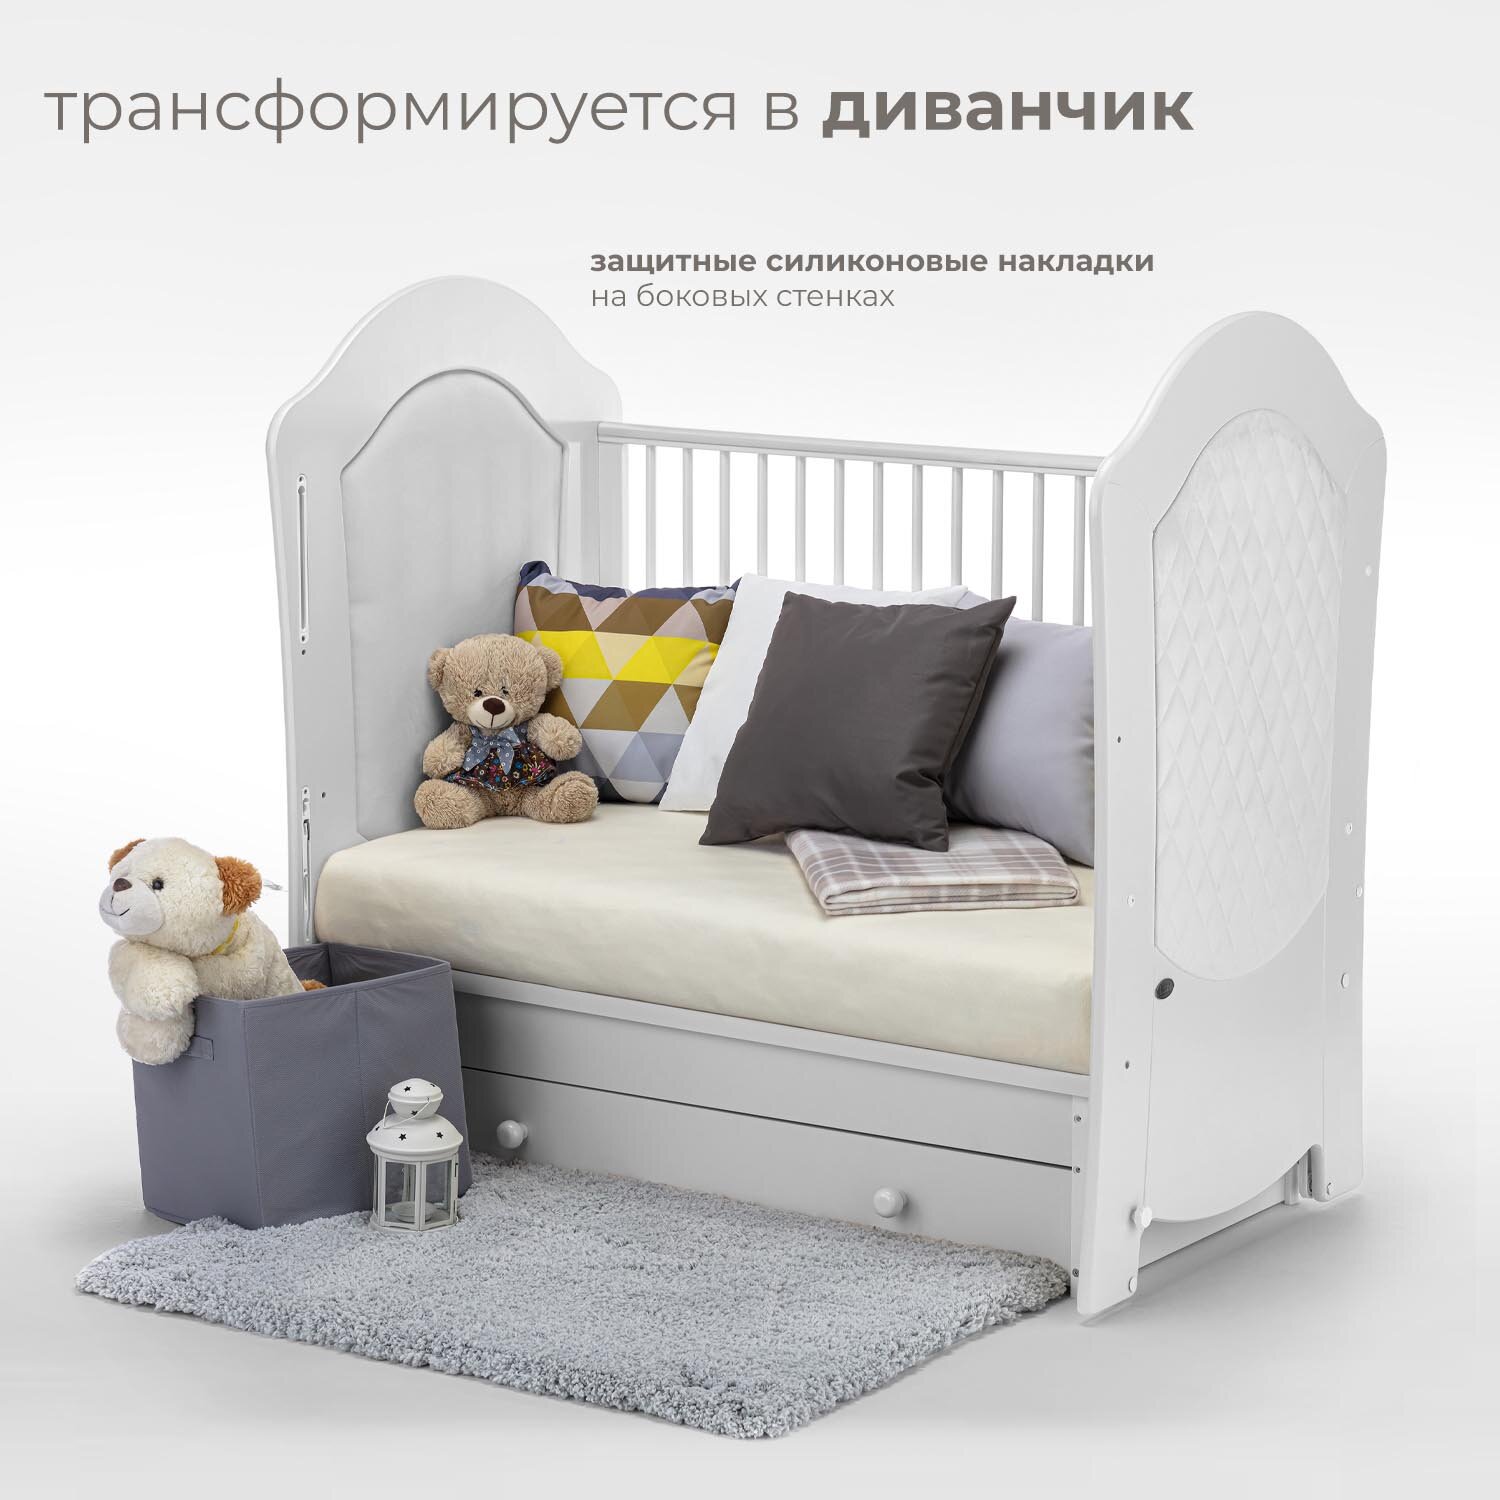 Детская кровать Nuovita Tempi Swing с поперечным маятником, белая - фото №6